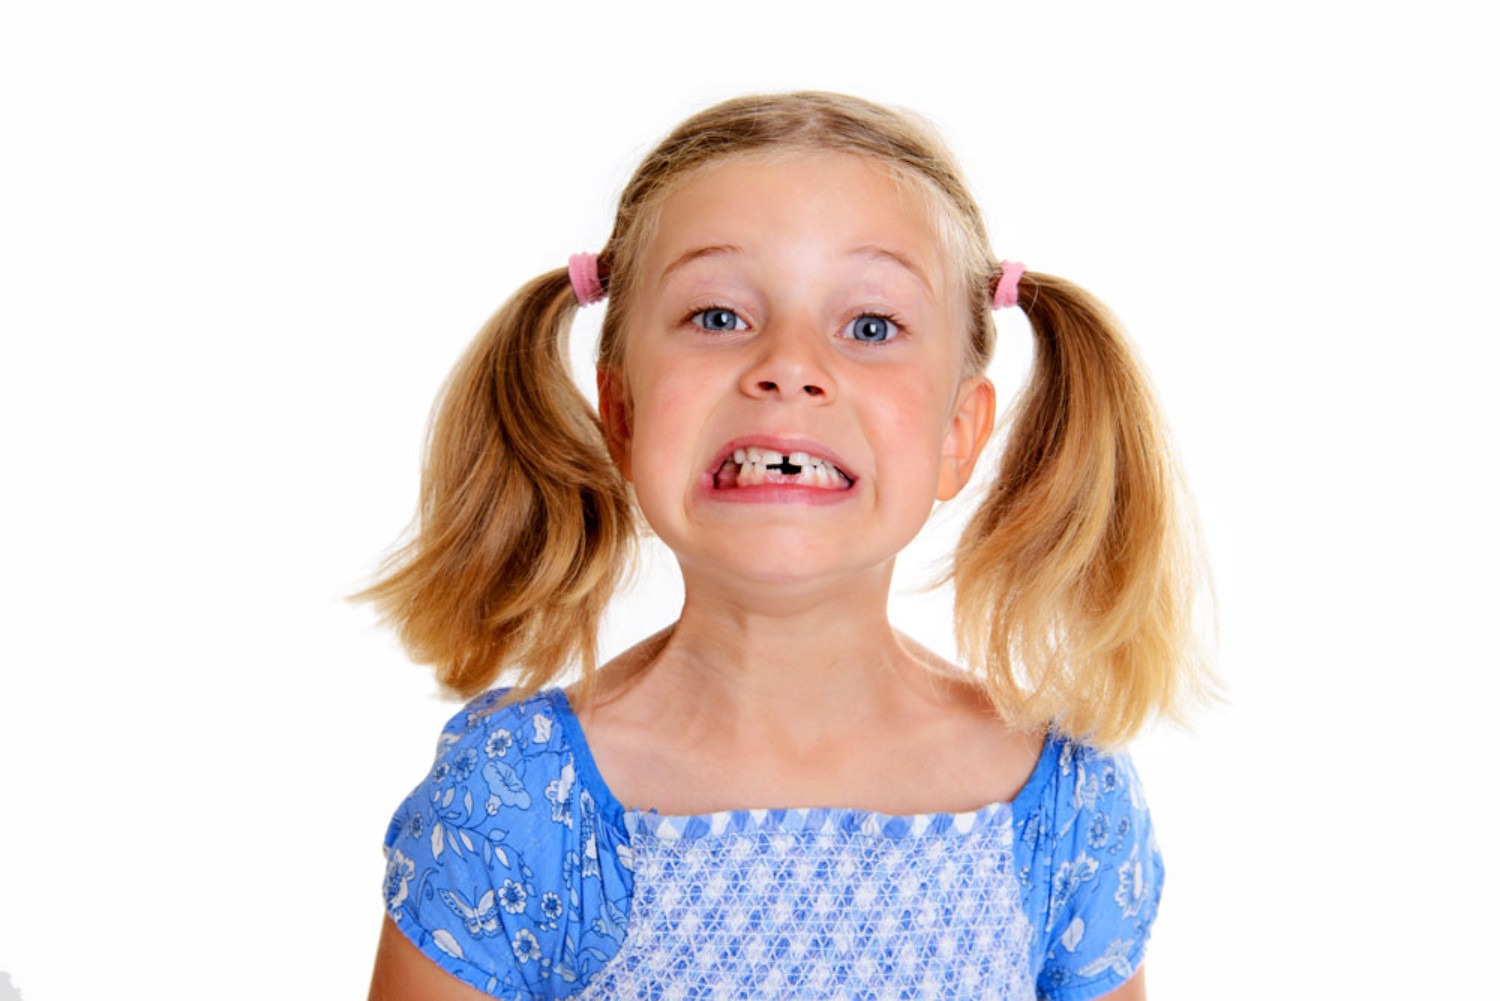 Little girl missing teeth